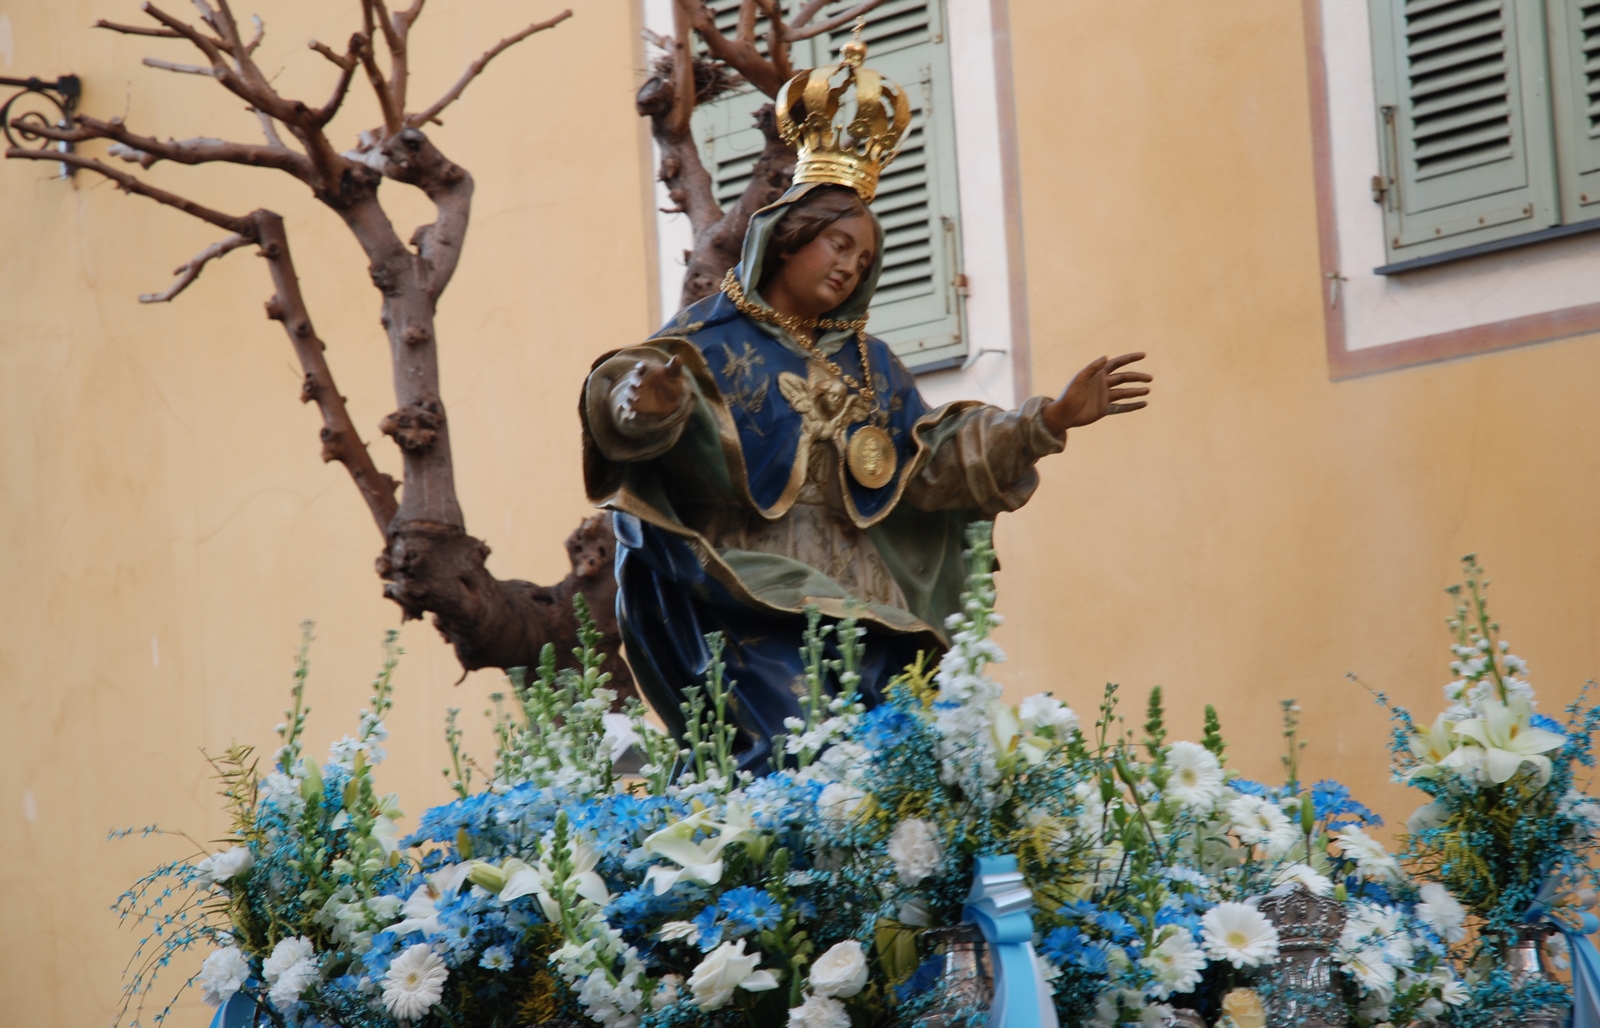 Nuestra Señora de la Misericordia de Ajaccio, la Devoción de Napoleón, Francia (18 mar)